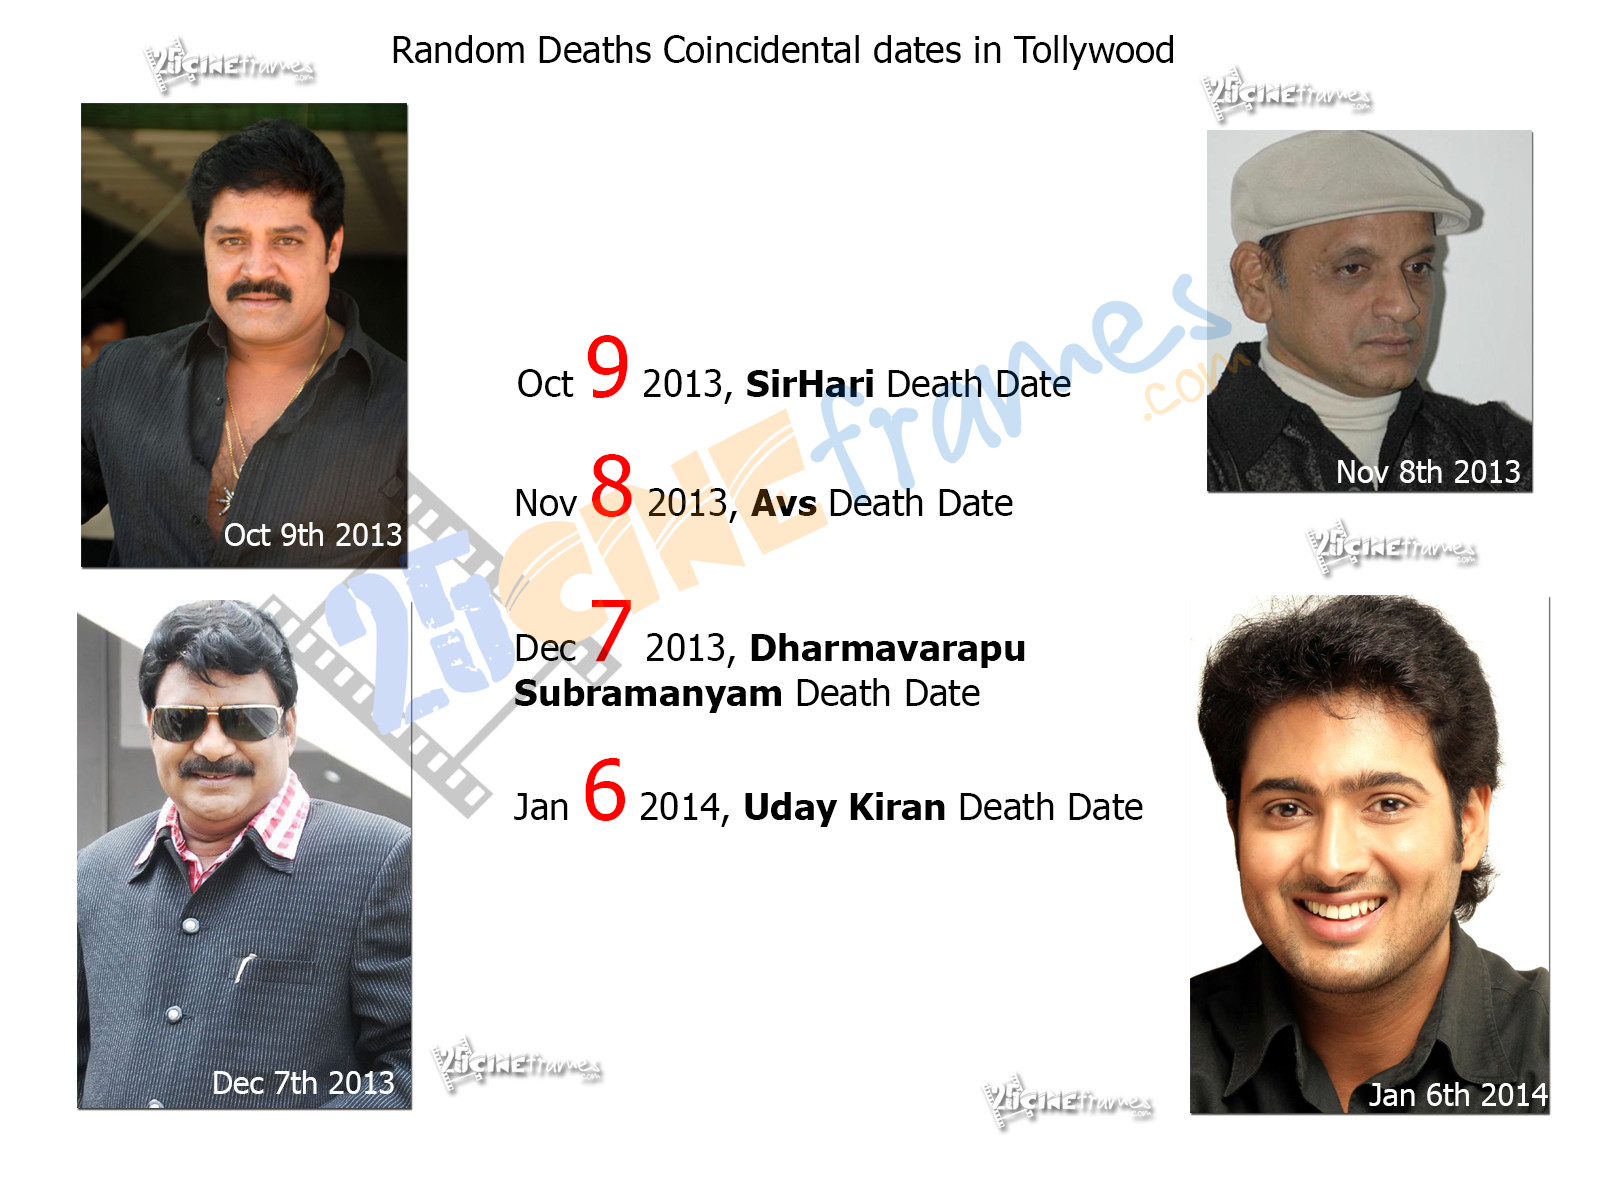 Random Deaths in Telugu film Industry